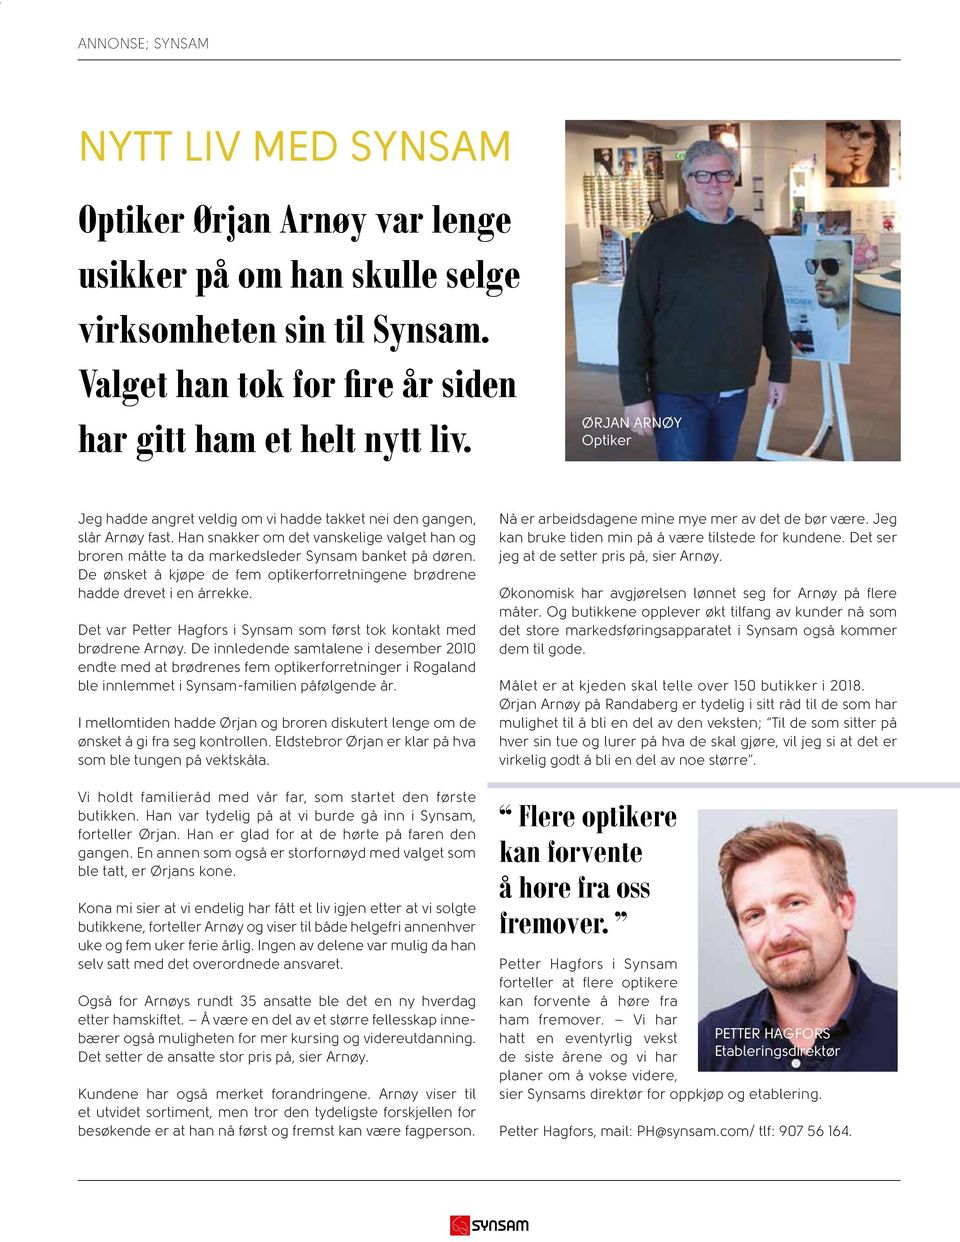 De ønsket å kjøpe de fem optikerforretningene brødrene hadde drevet i en årrekke. Det var Petter Hagfors i Synsam som først tok kontakt med brødrene Arnøy.